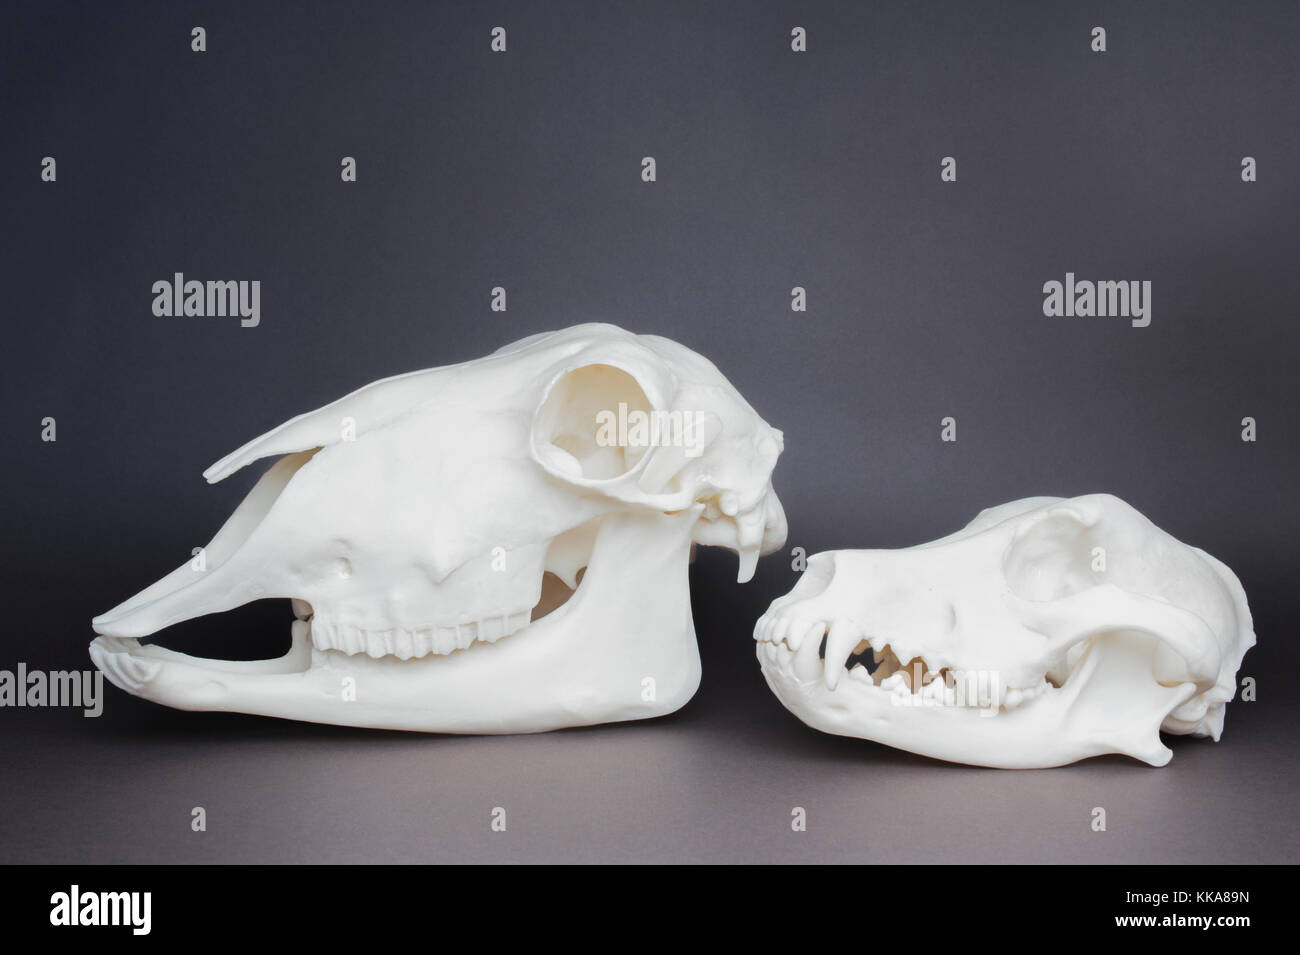 Cane e pecore cranio (carnivoro e erbivoro cranio confronto), che mostra denti e struttura a ganascia Foto Stock